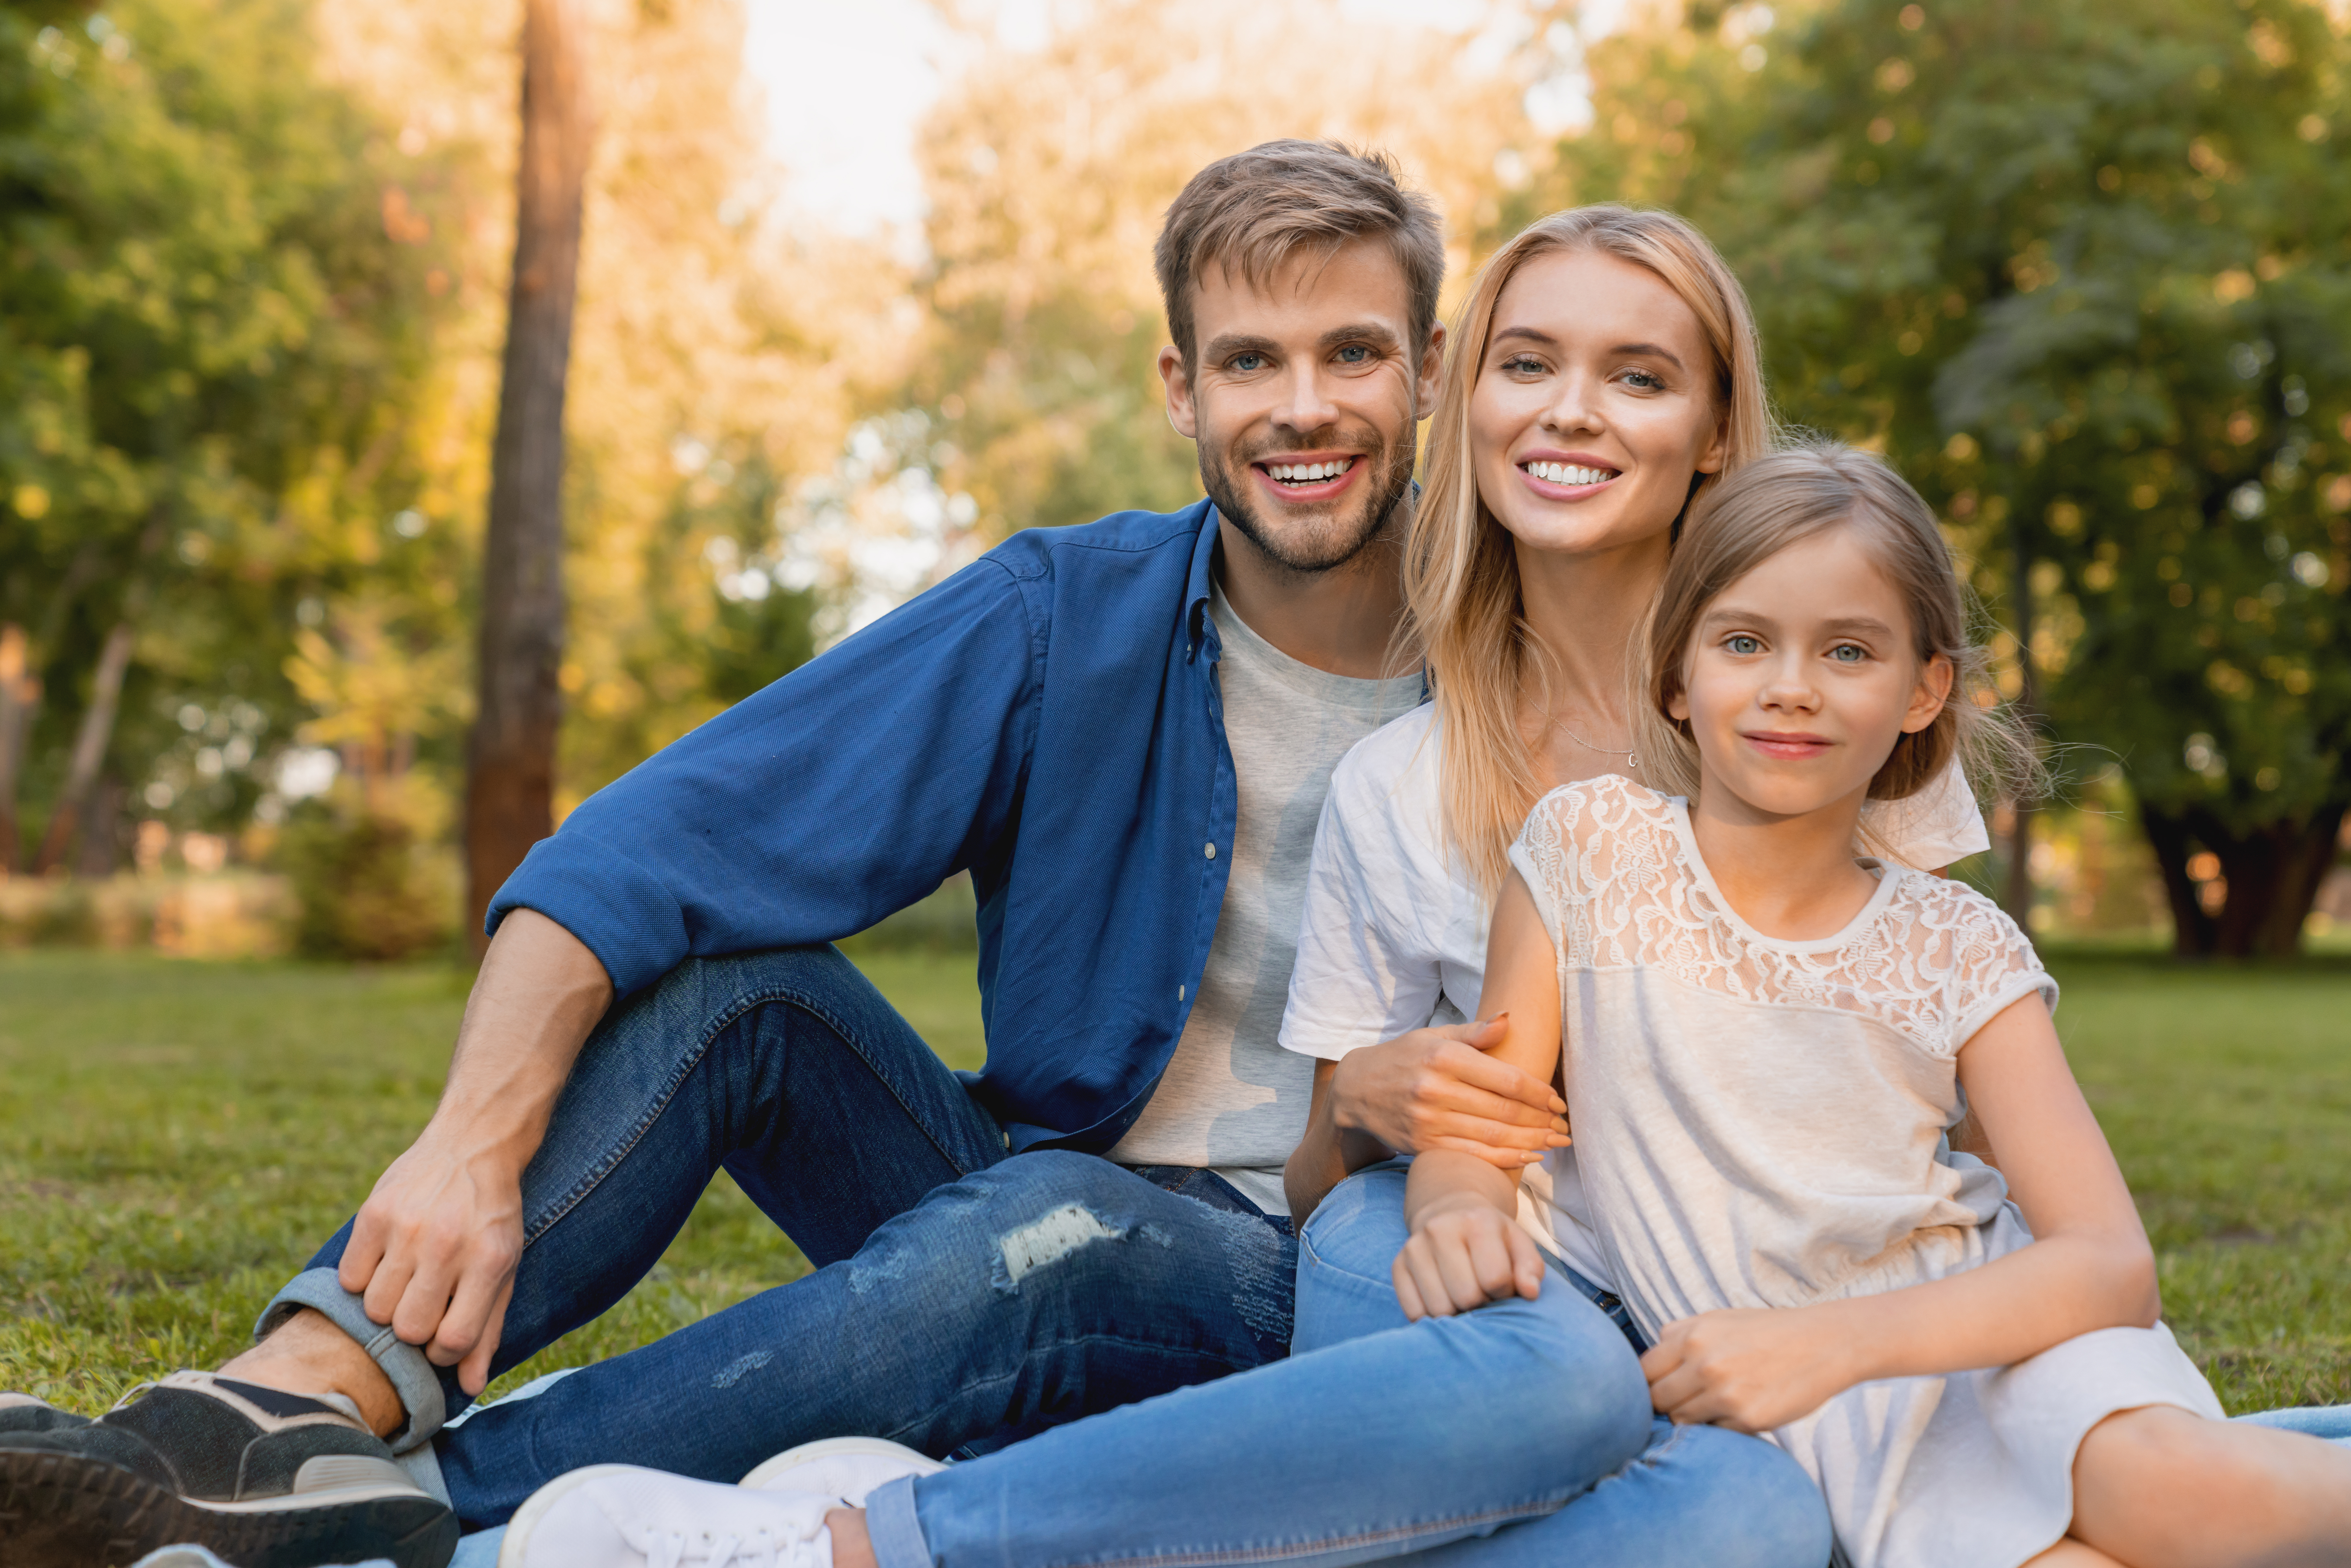 Eine glückliche Familie. | Quelle: Shutterstock